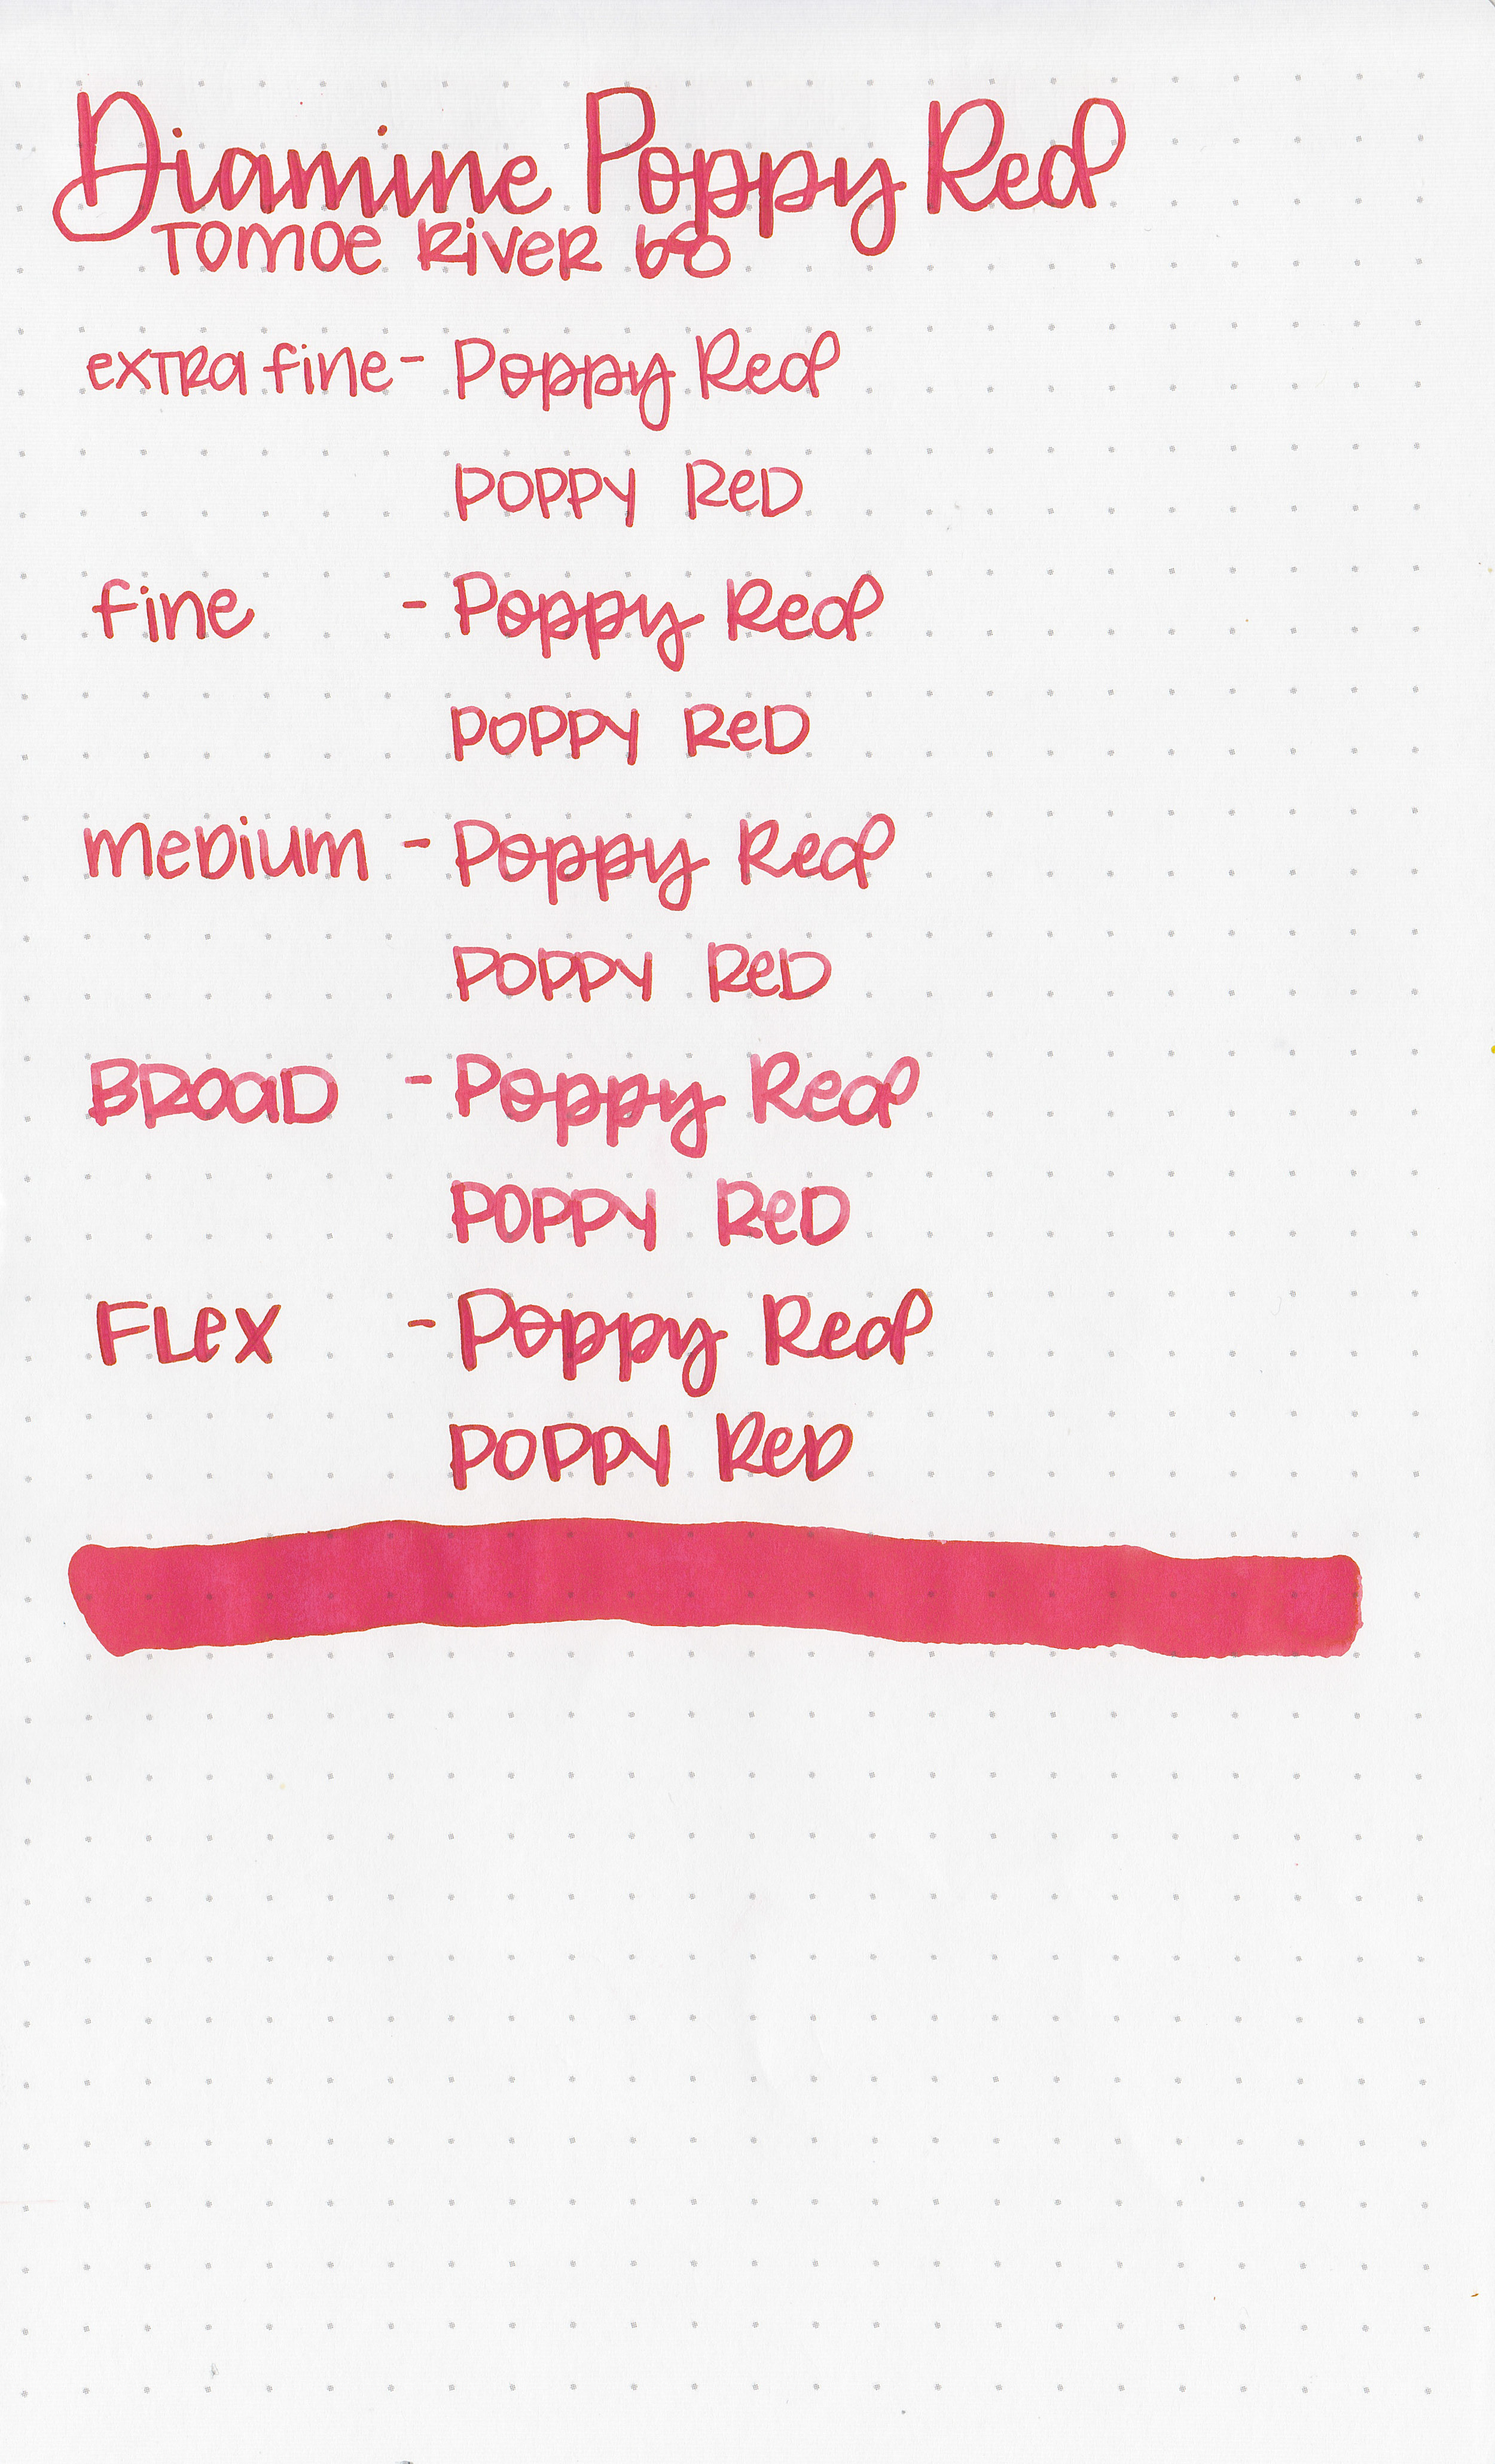 d-poppy-red-5.jpg